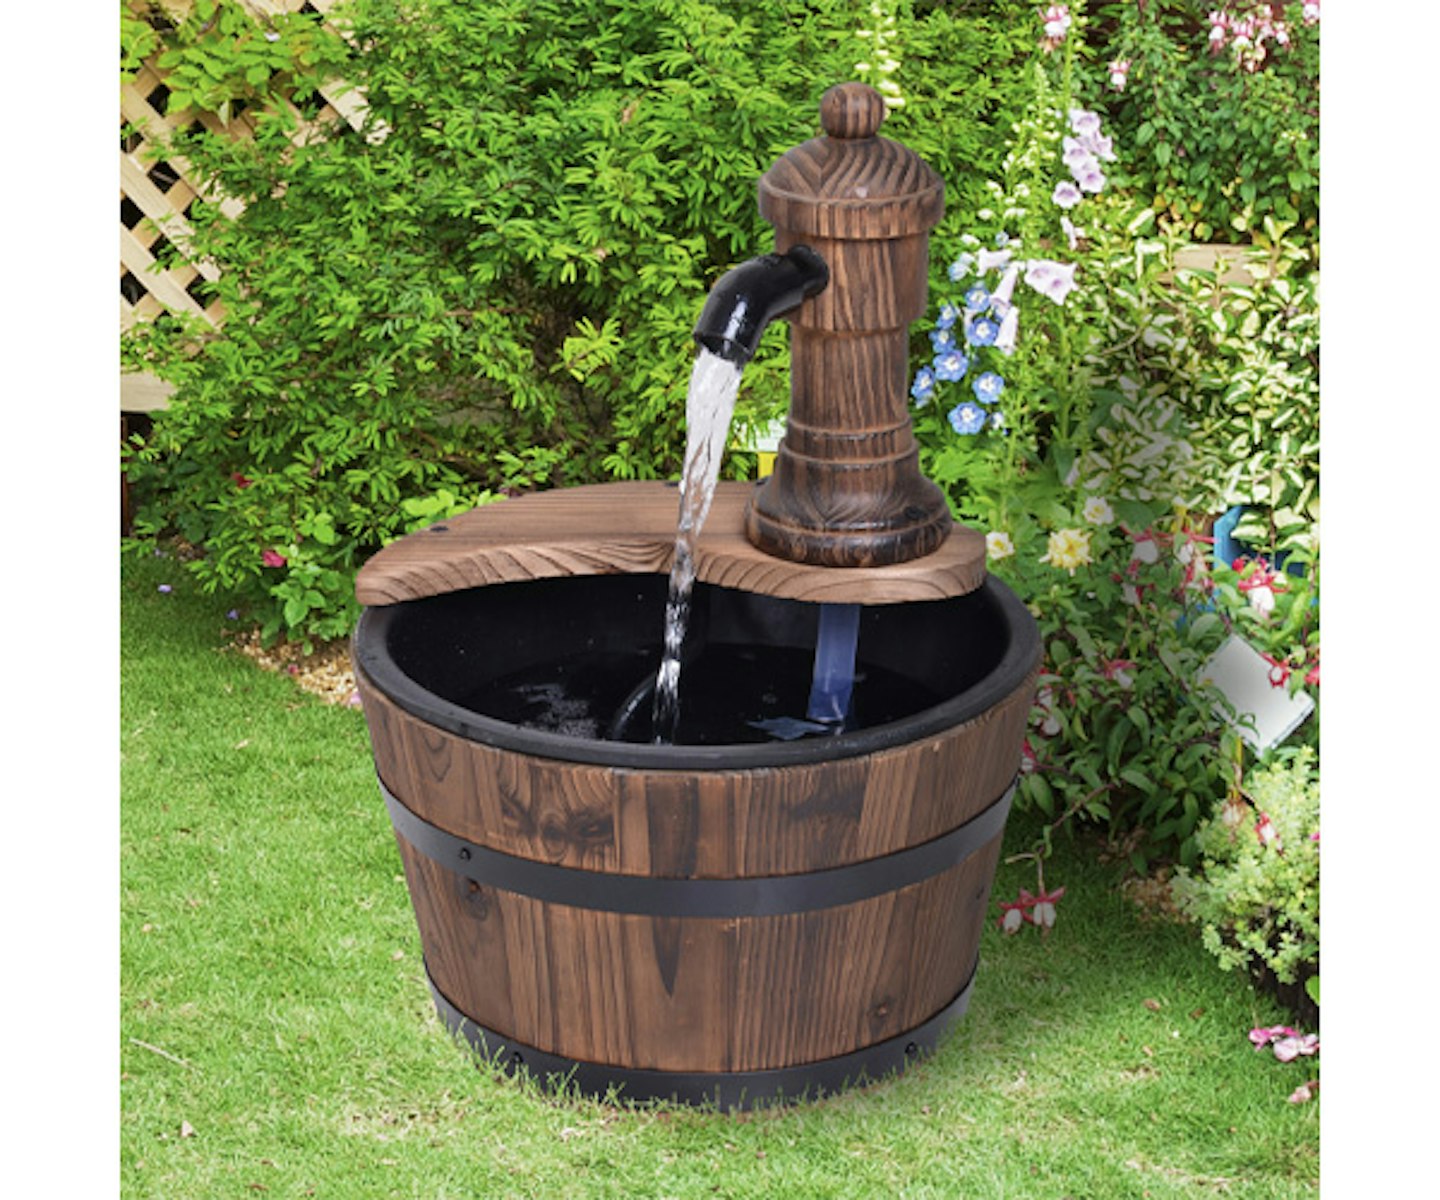 Wooden Barrel Patio Water Fountain Decorative Ornament